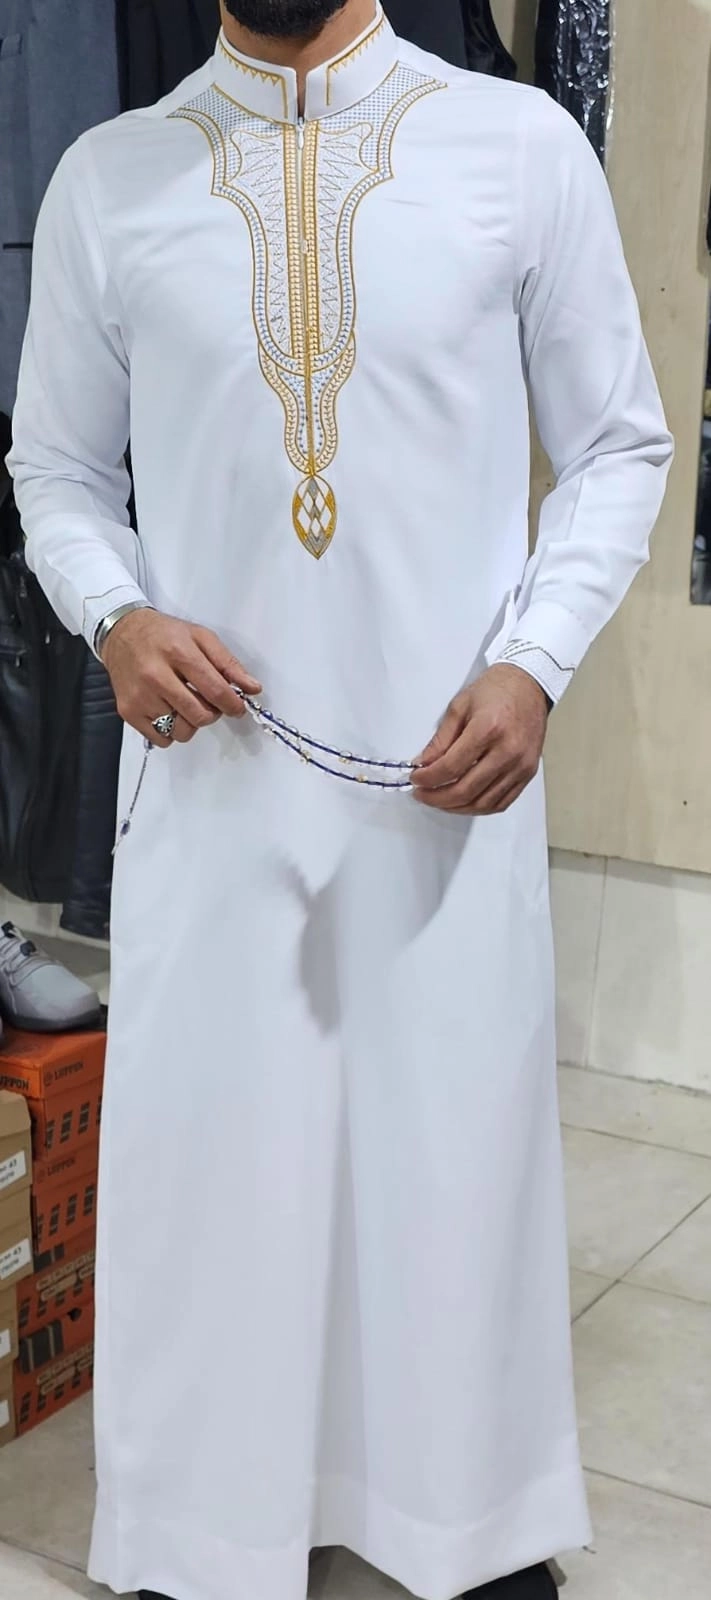 في الجزيرة العربية يختلف الزي الذي يرتديه الفرد من البادية إلى الحضر